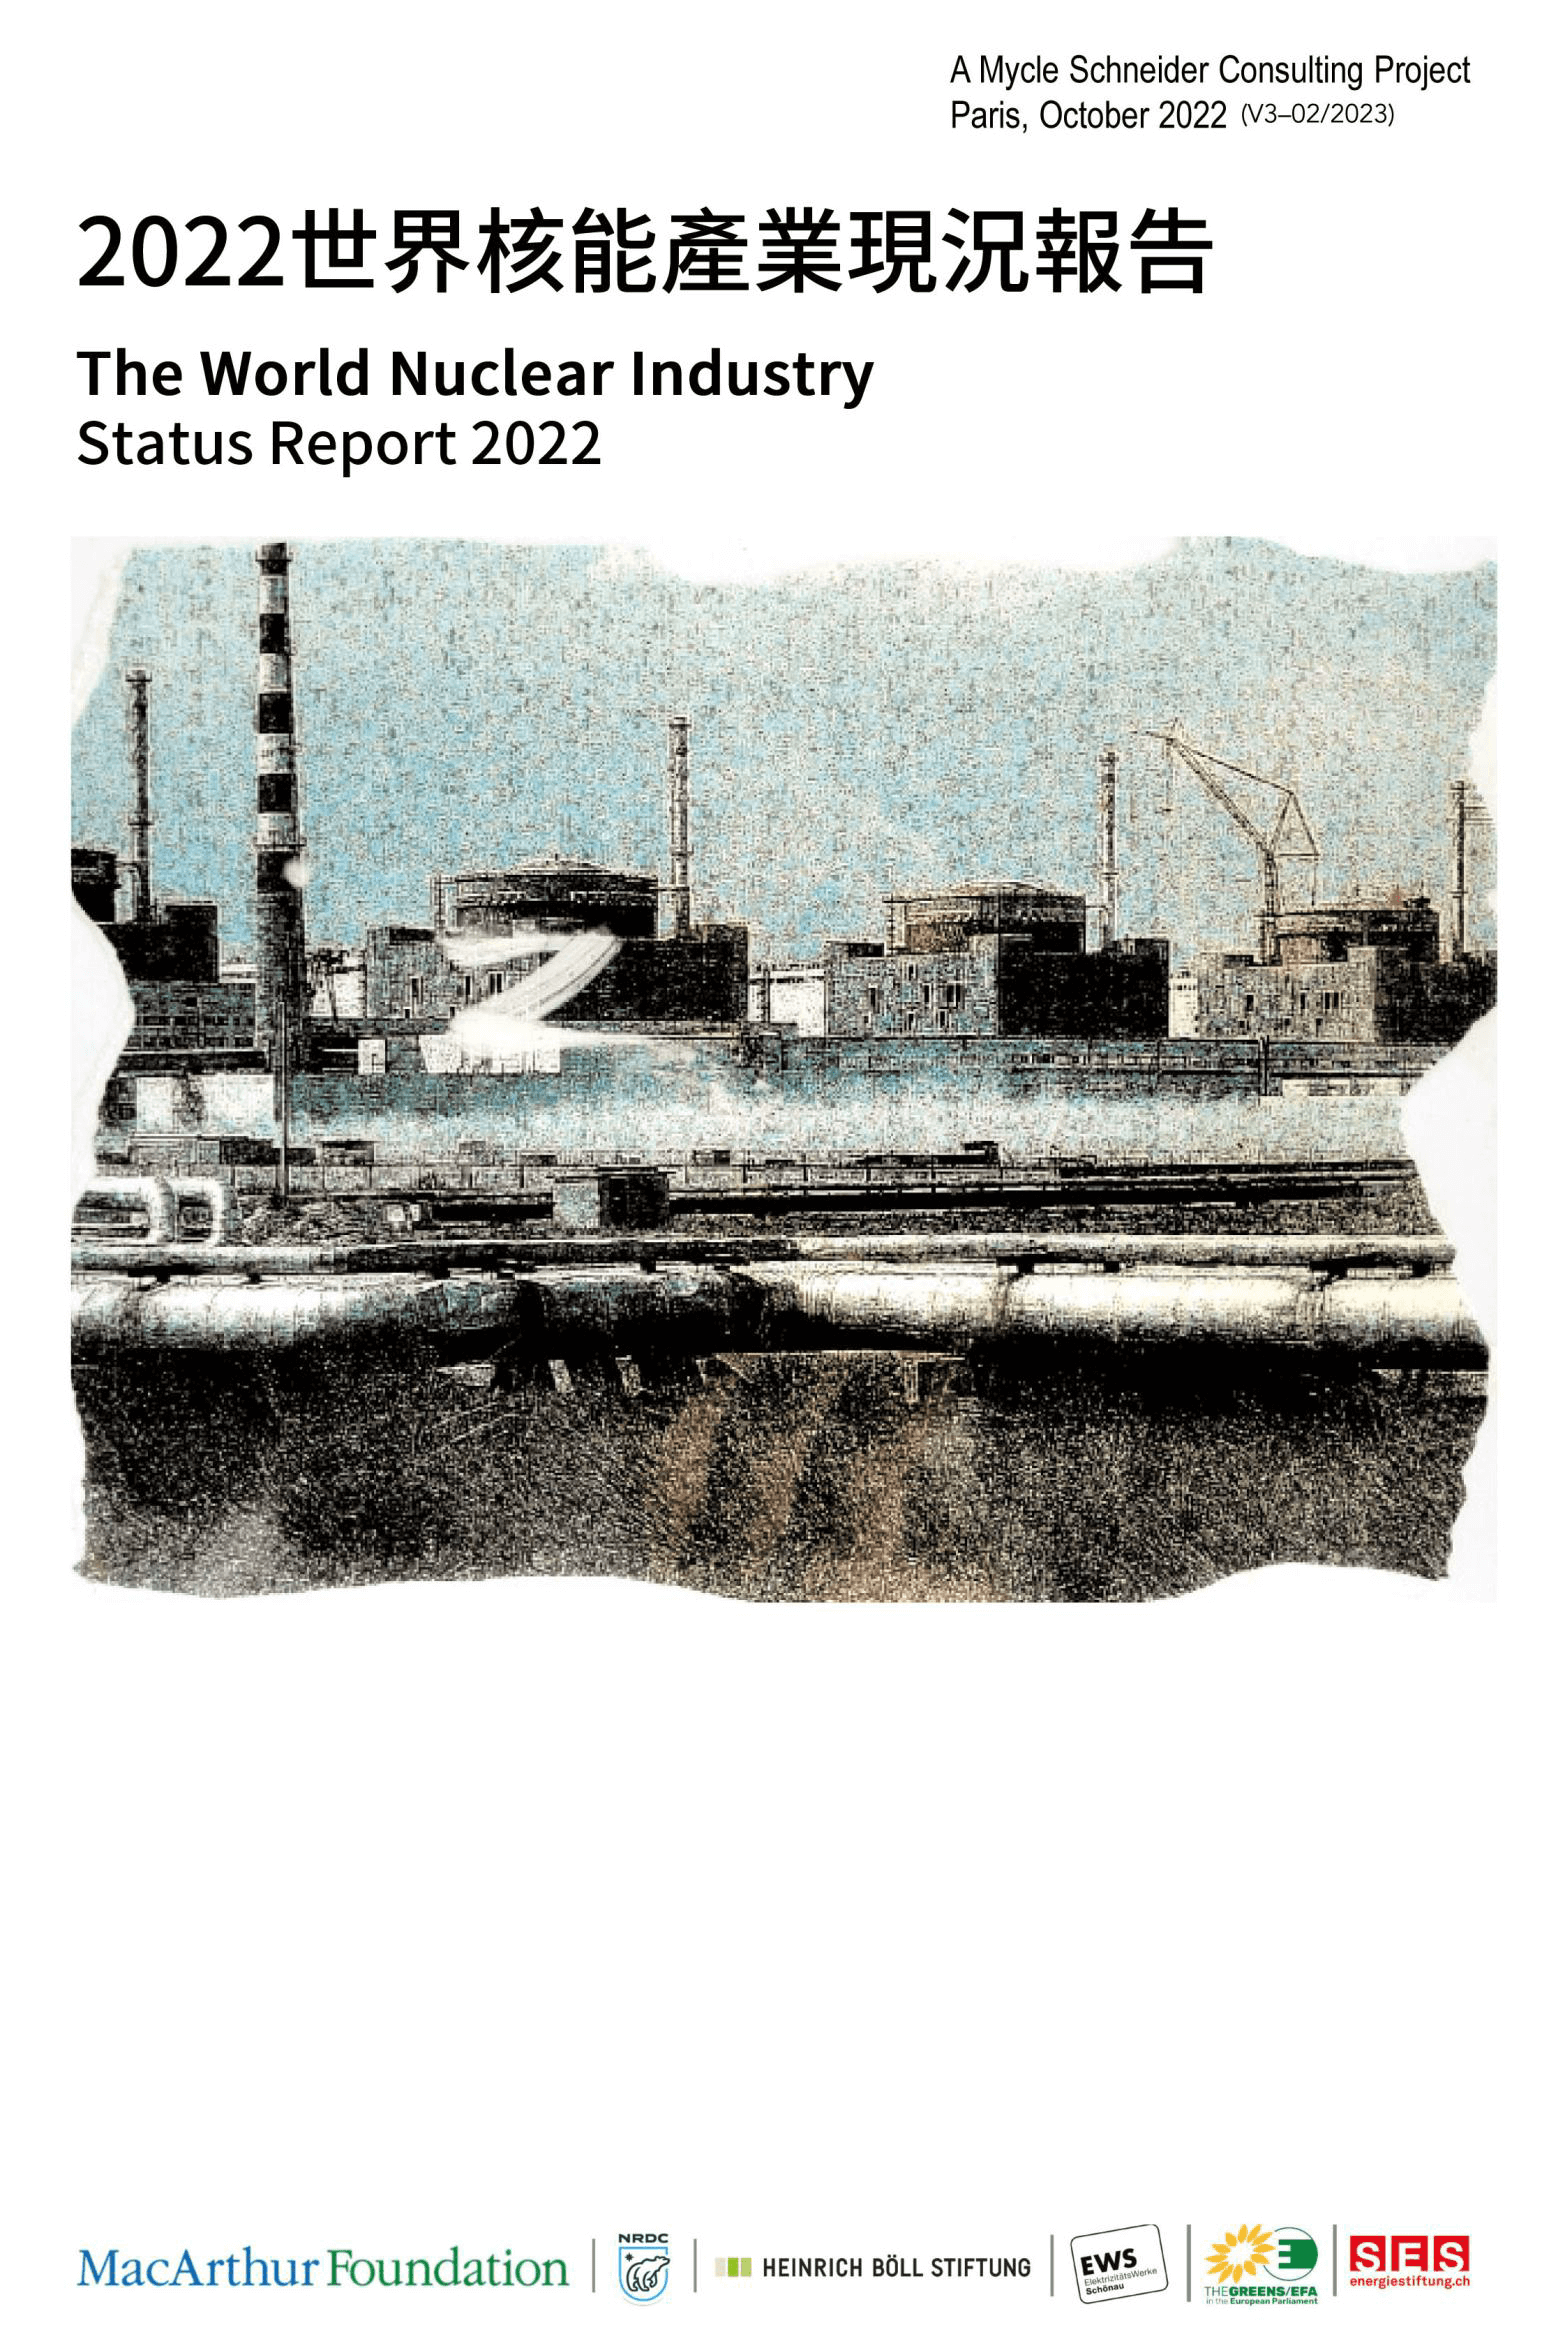 《2022世界核能產業現況報告》正體中文版摘要－2 - 綠色公民行動聯盟